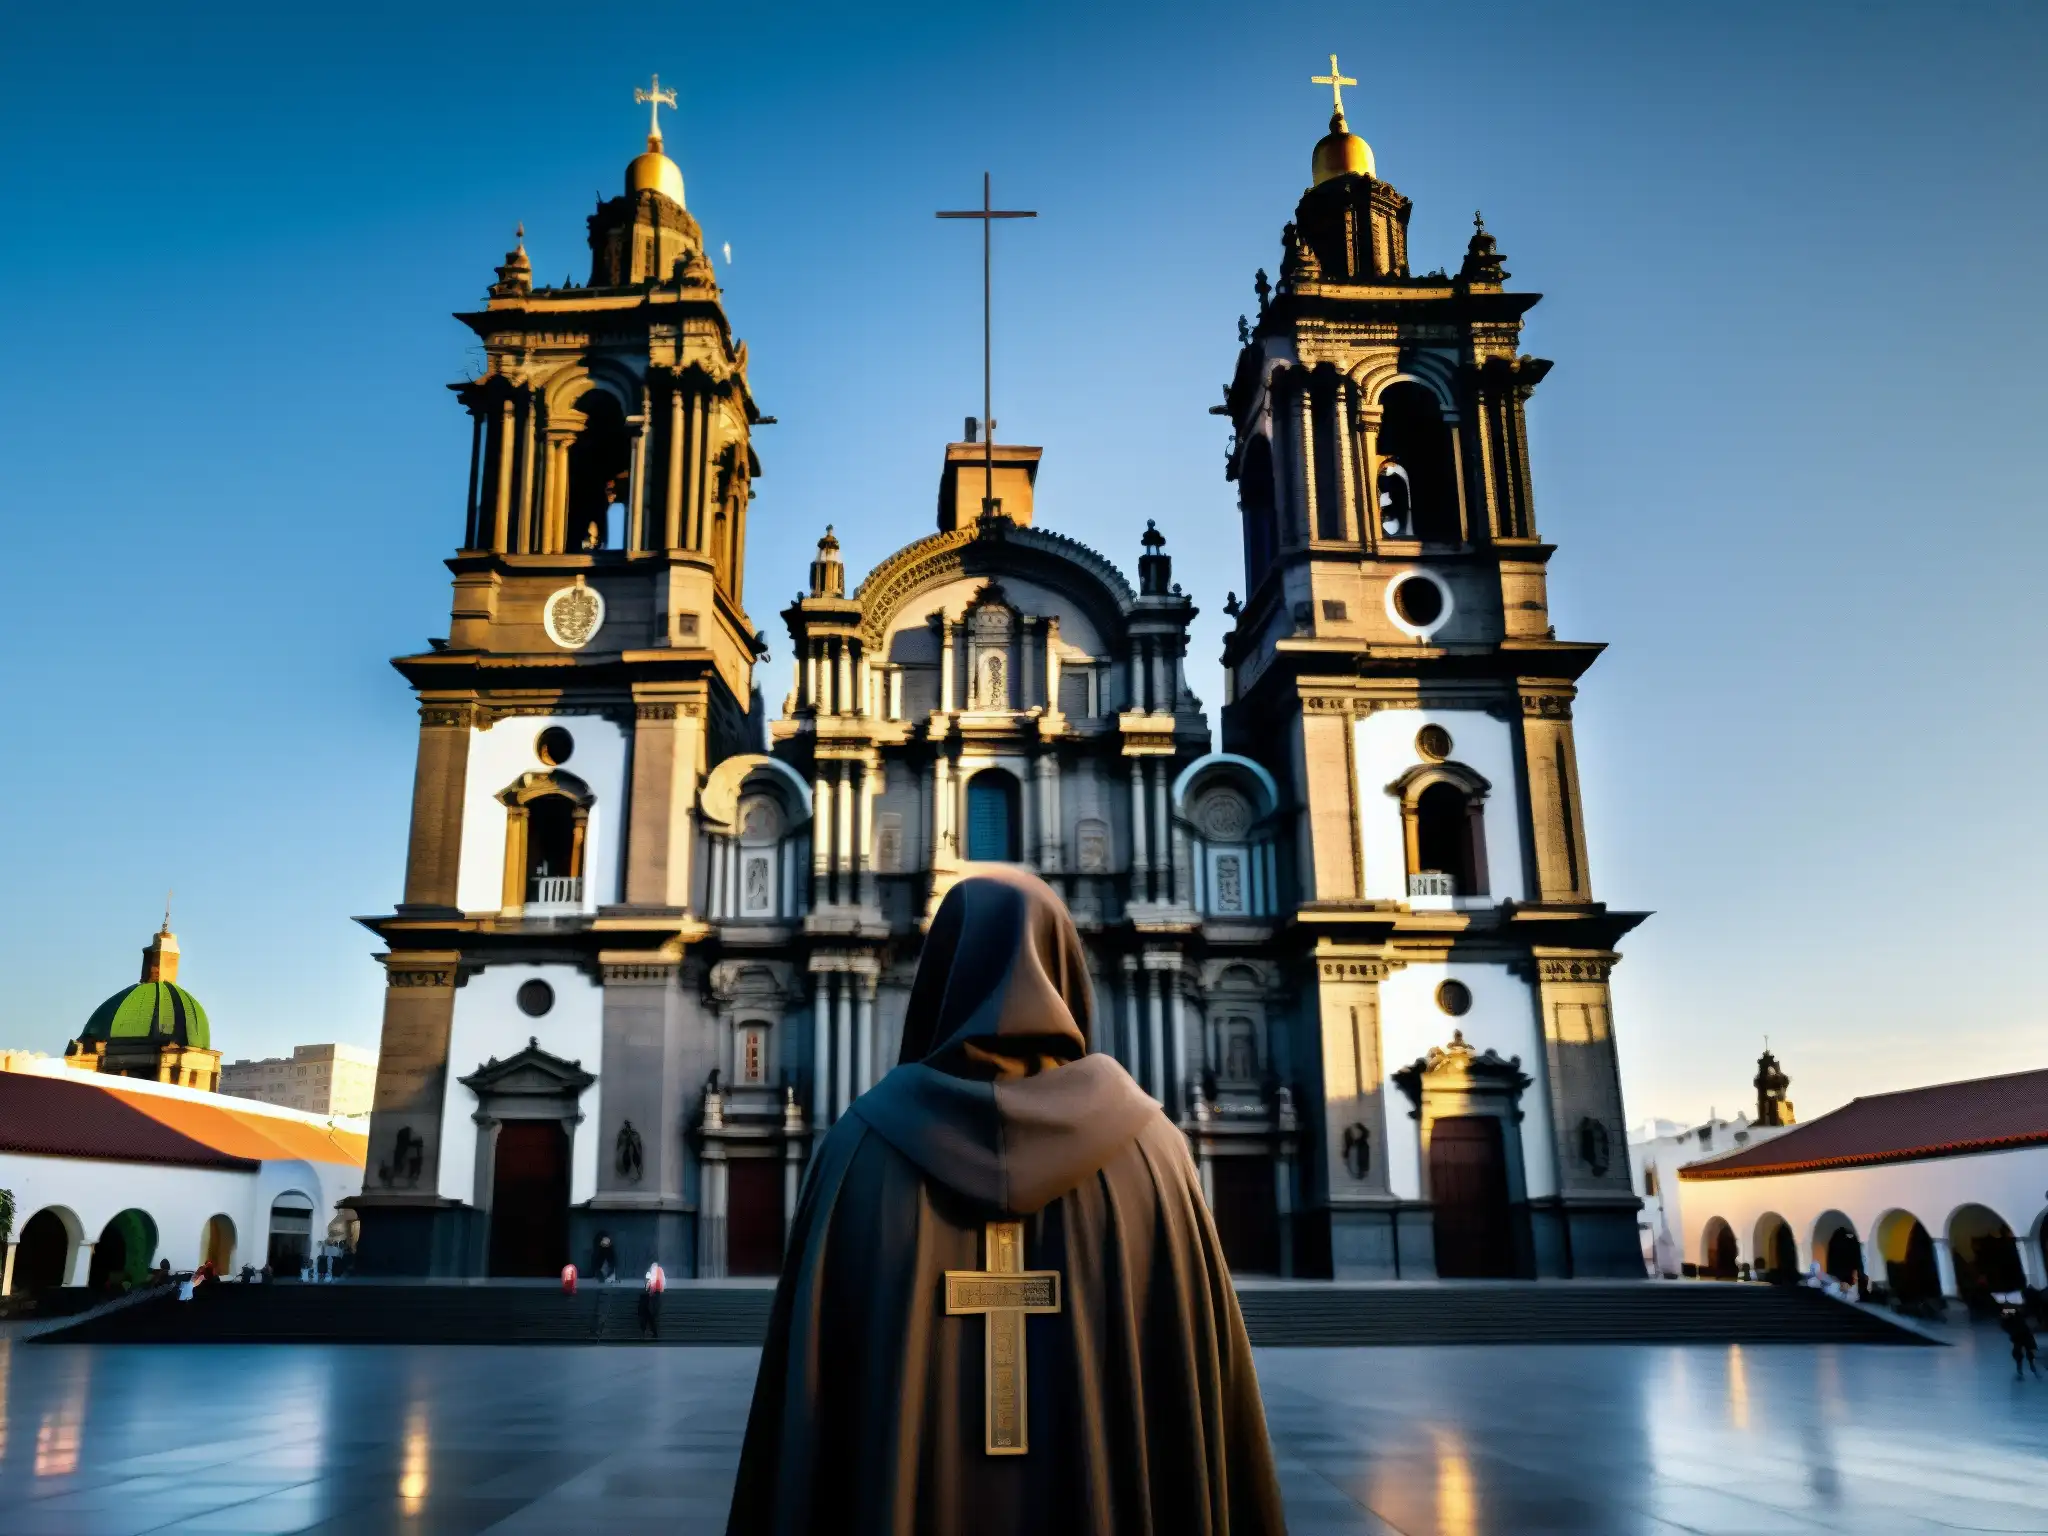 Imagen impactante del Monje de la Catedral en la Ciudad de México, destacando la imponente catedral y la misteriosa silueta del monje